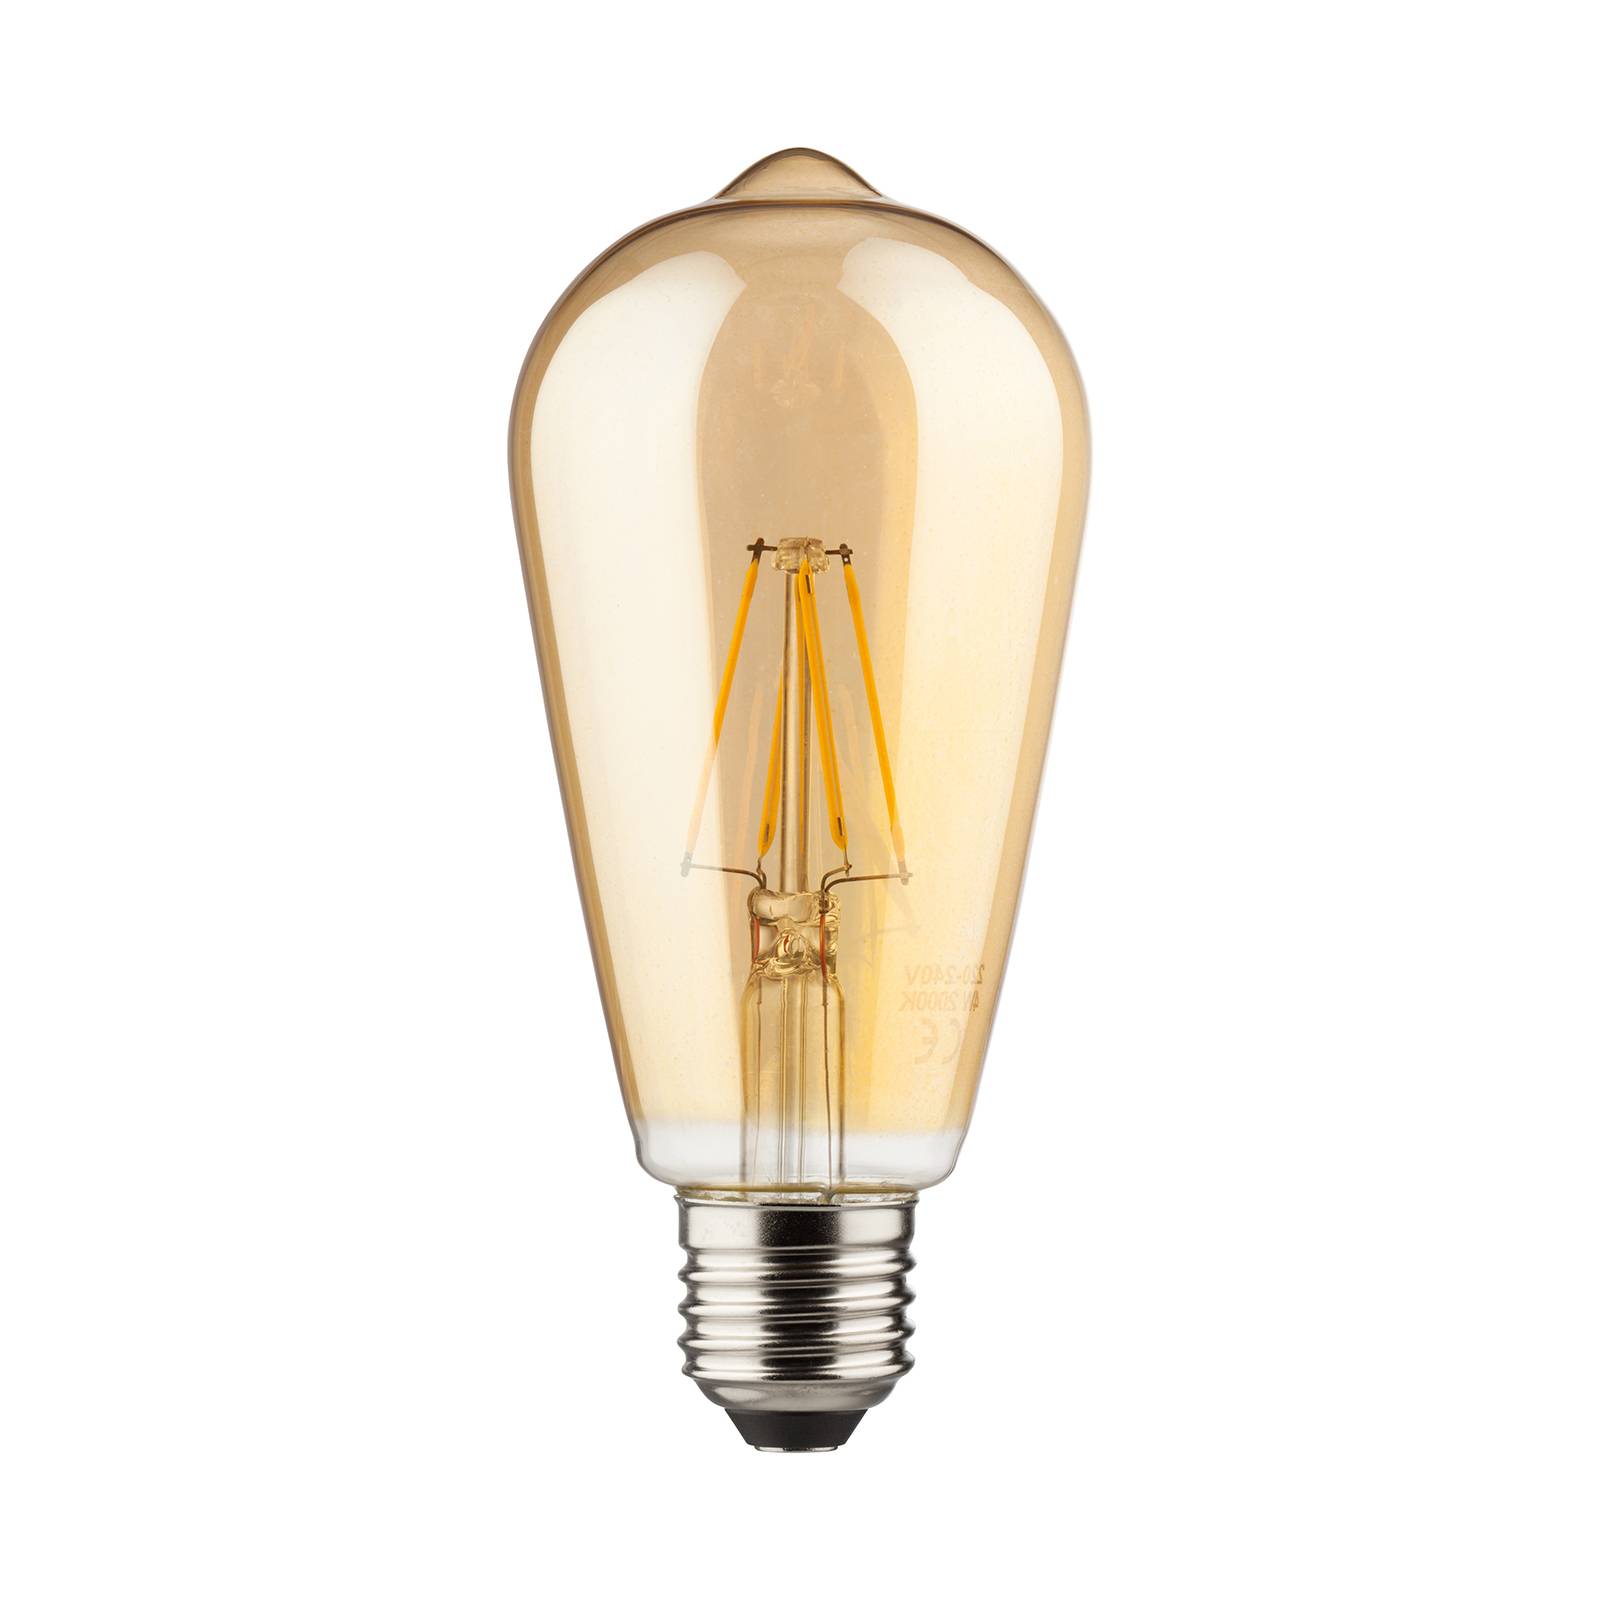 Mller-Licht E27 7W LED lampadina rustica oro